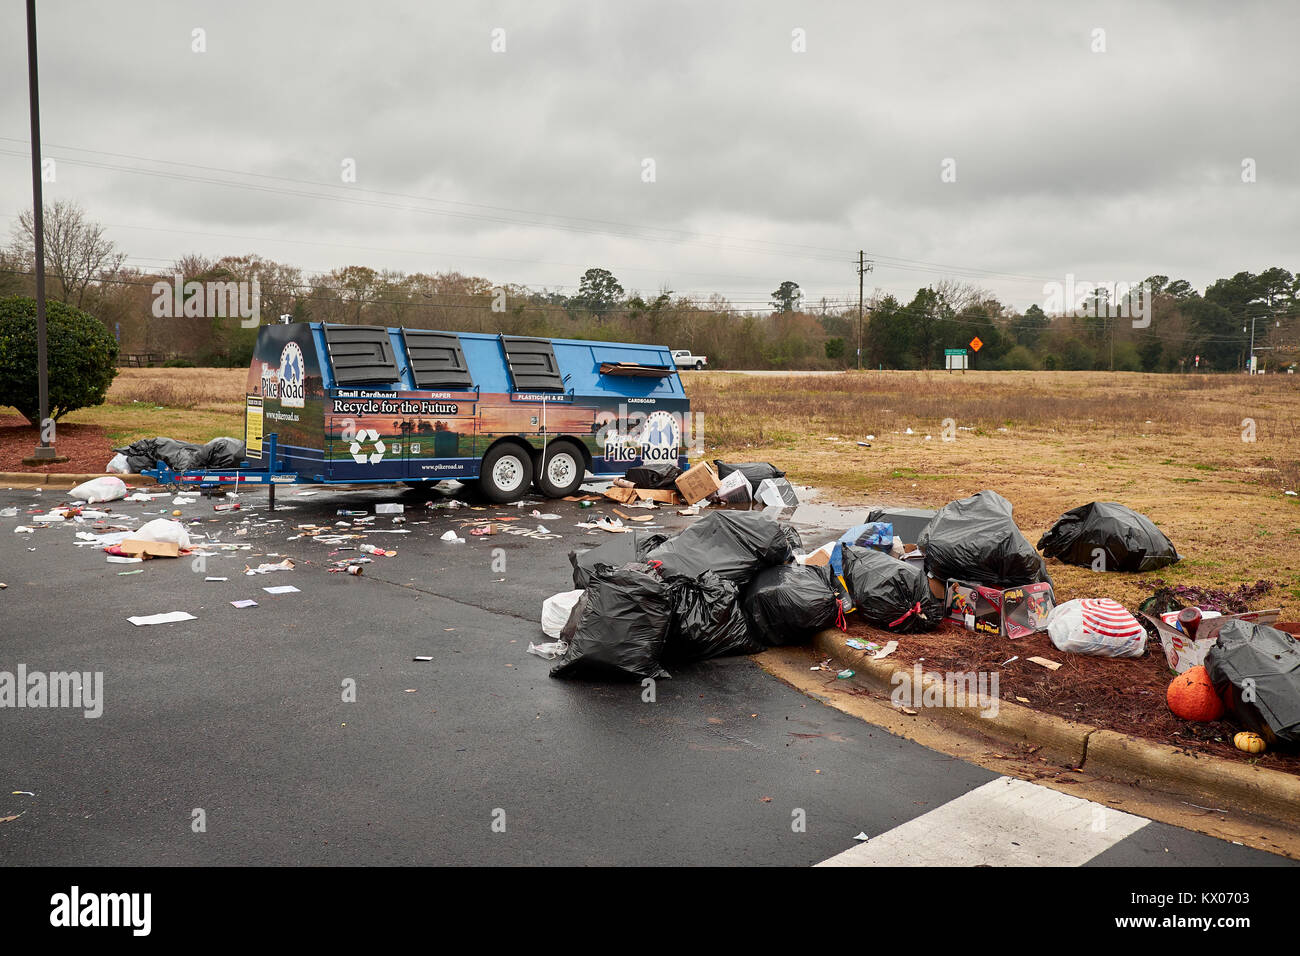 Mess de débordement de plastique non recouvrées, le carton et le papier à recycler ou bac de recyclage en attente de pick up à Pike Road Virginia USA. Banque D'Images